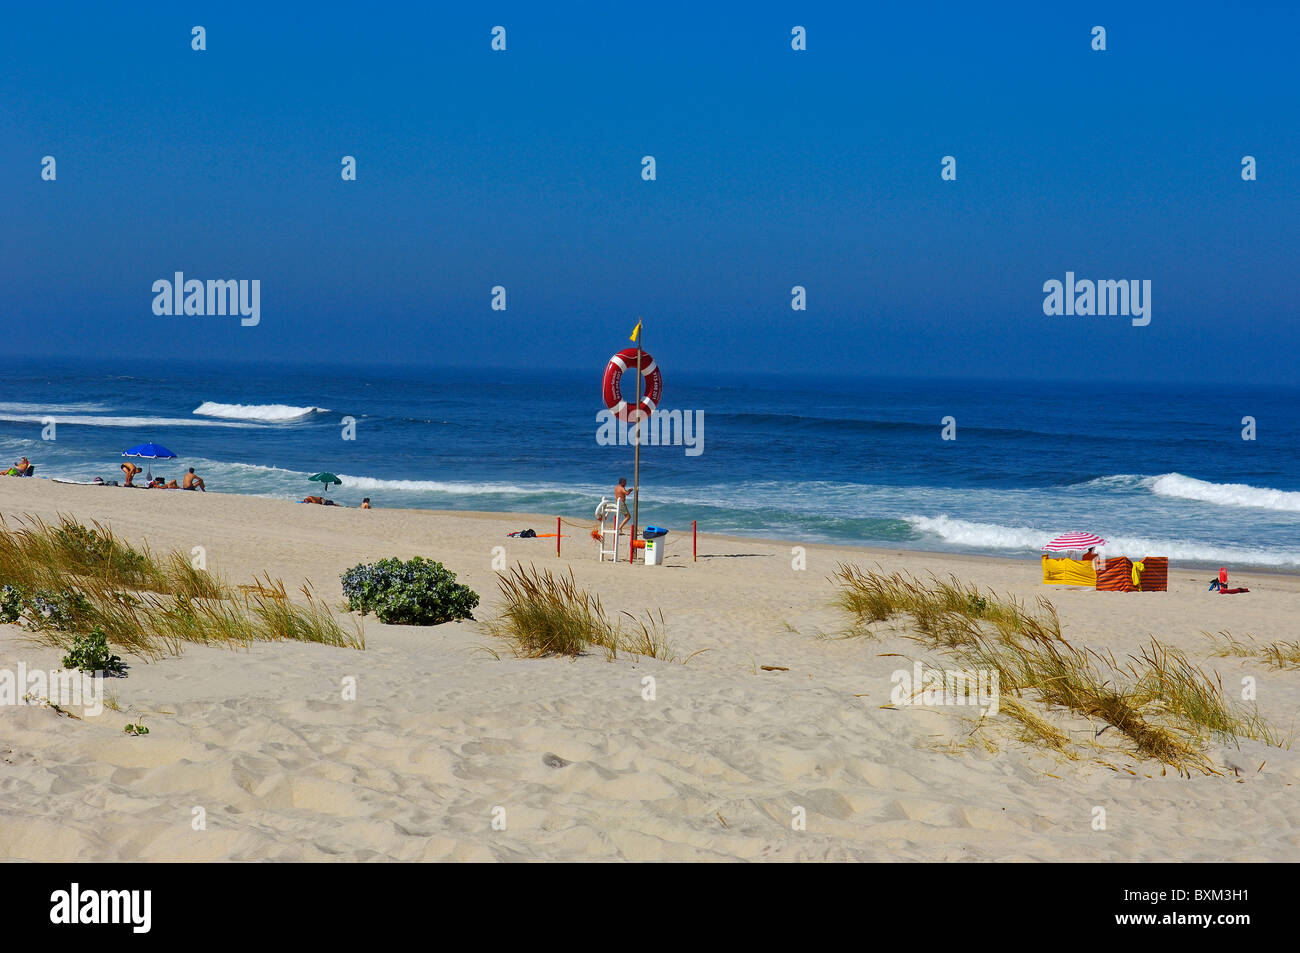 Costa Nova Beach. Aveiro, Beiras region, Portugal Stock Photo